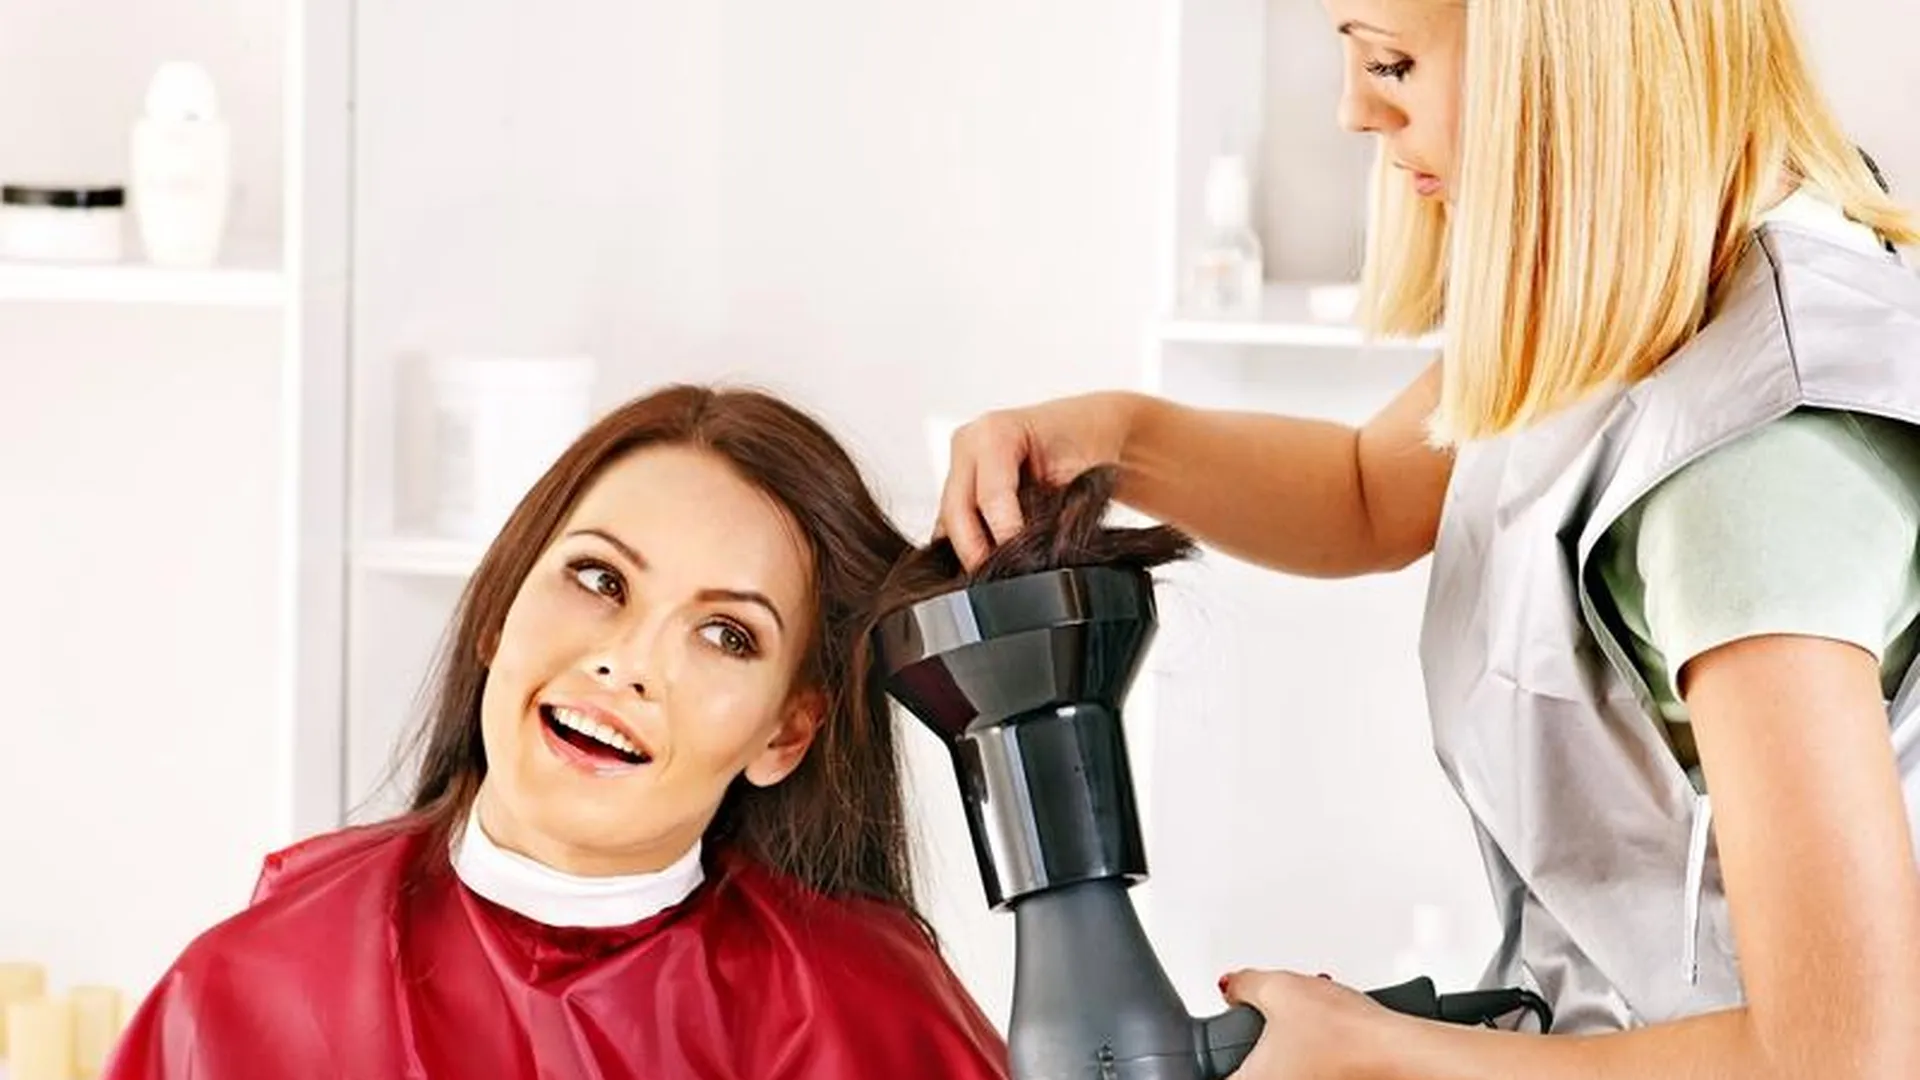 Право волоса: как подмосковные парикмахерские борются за клиента 